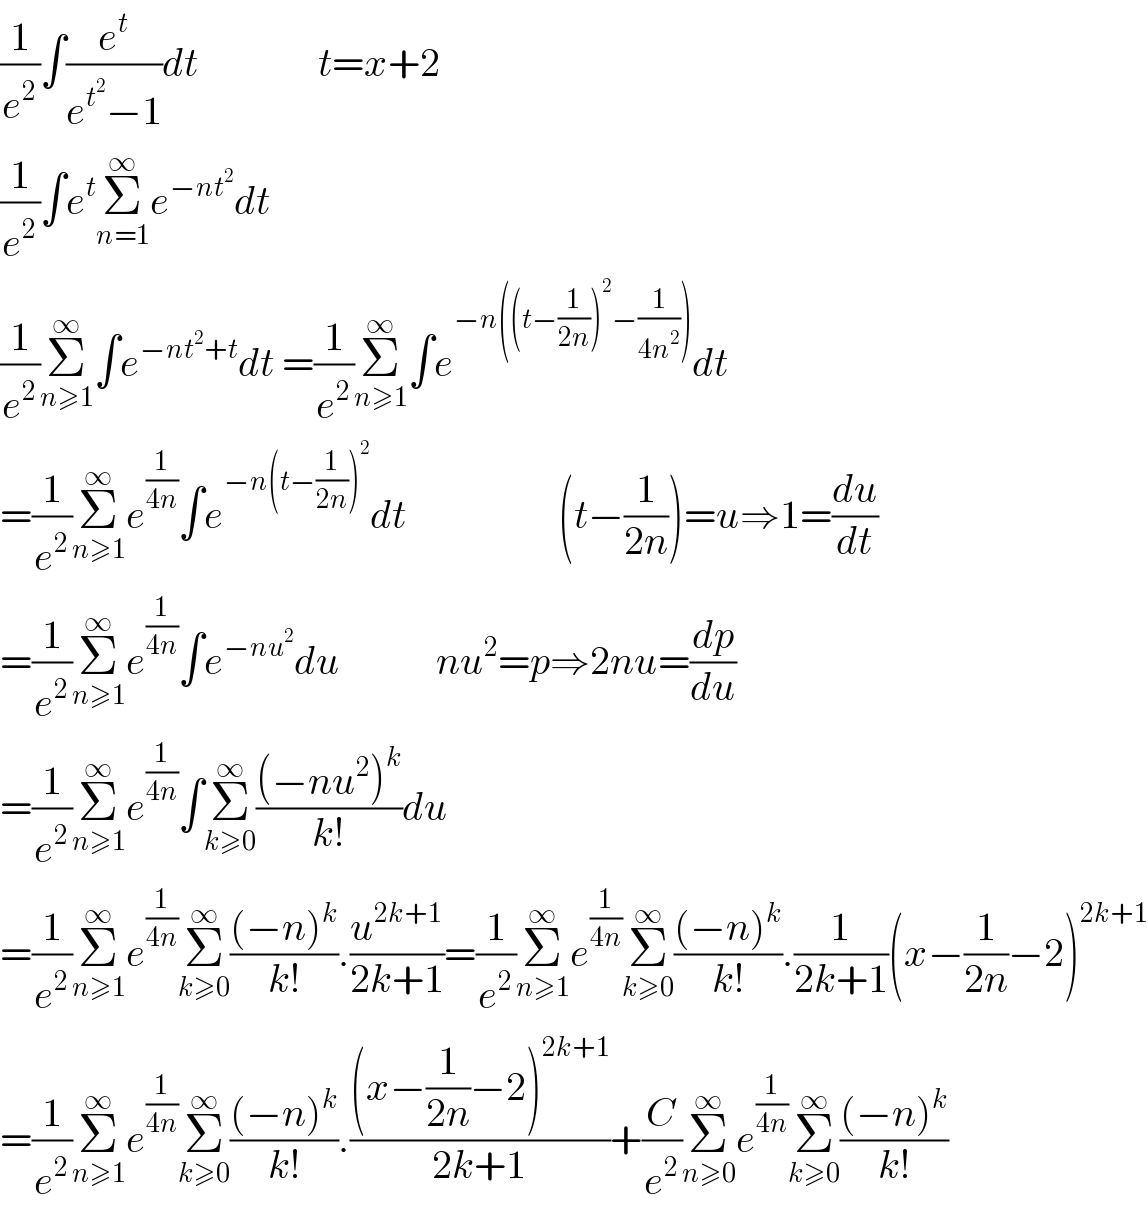 (1/e^2 )∫(e^t /(e^t^2  −1))dt               t=x+2       (1/e^2 )∫e^t Σ_(n=1) ^∞ e^(−nt^2 ) dt  (1/e^2 )Σ_(n≥1) ^∞ ∫e^(−nt^2 +t) dt =(1/e^2 )Σ_(n≥1) ^∞ ∫e^(−n((t−(1/(2n)))^2 −(1/(4n^2 )))) dt  =(1/e^2 )Σ_(n≥1) ^∞ e^(1/(4n)) ∫e^(−n(t−(1/(2n)))^2 ) dt                   (t−(1/(2n)))=u⇒1=(du/dt)  =(1/e^2 )Σ_(n≥1) ^∞ e^(1/(4n)) ∫e^(−nu^2 ) du            nu^2 =p⇒2nu=(dp/du)  =(1/e^2 )Σ_(n≥1) ^∞ e^(1/(4n)) ∫Σ_(k≥0) ^∞ (((−nu^2 )^k )/(k!))du  =(1/e^2 )Σ_(n≥1) ^∞ e^(1/(4n)) Σ_(k≥0) ^∞ (((−n)^k )/(k!)).(u^(2k+1) /(2k+1))=(1/e^2 )Σ_(n≥1) ^∞ e^(1/(4n)) Σ_(k≥0) ^∞ (((−n)^k )/(k!)).(1/(2k+1))(x−(1/(2n))−2)^(2k+1)   =(1/e^2 )Σ_(n≥1) ^∞ e^(1/(4n)) Σ_(k≥0) ^∞ (((−n)^k )/(k!)).(((x−(1/(2n))−2)^(2k+1) )/(2k+1))+(C/e^2 )Σ_(n≥0) ^∞ e^(1/(4n)) Σ_(k≥0) ^∞ (((−n)^k )/(k!))  